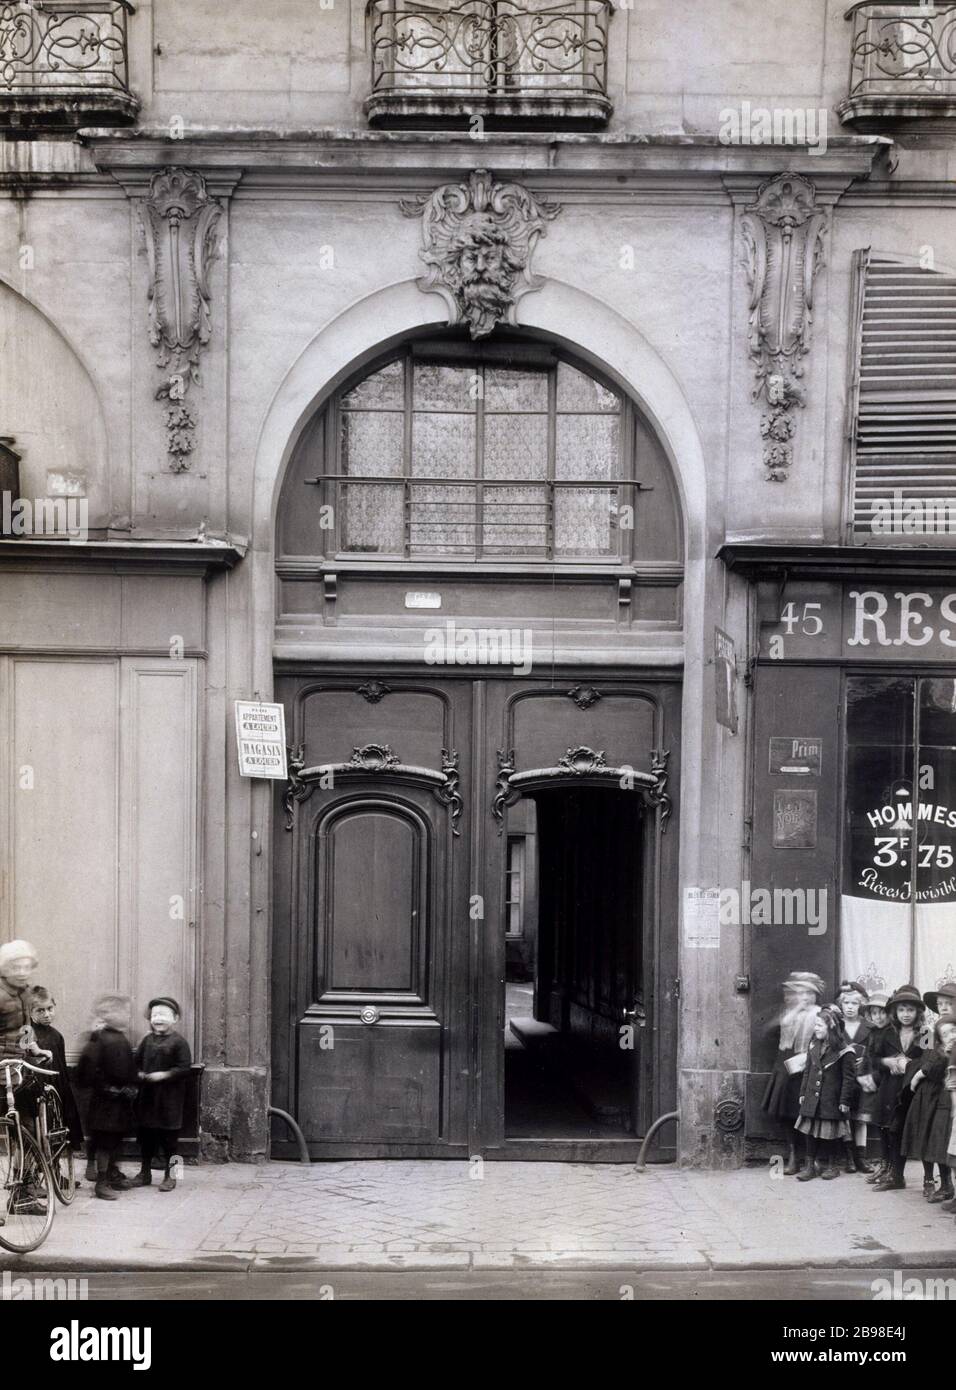 45 RUE DE LA HARPE 45, rue de la Harpe, ensemble de la porte. Parigi (Vème arr.). Photographie de Charles Lansiaux (1855-1939). Parigi, musée Carnavalet. Foto Stock